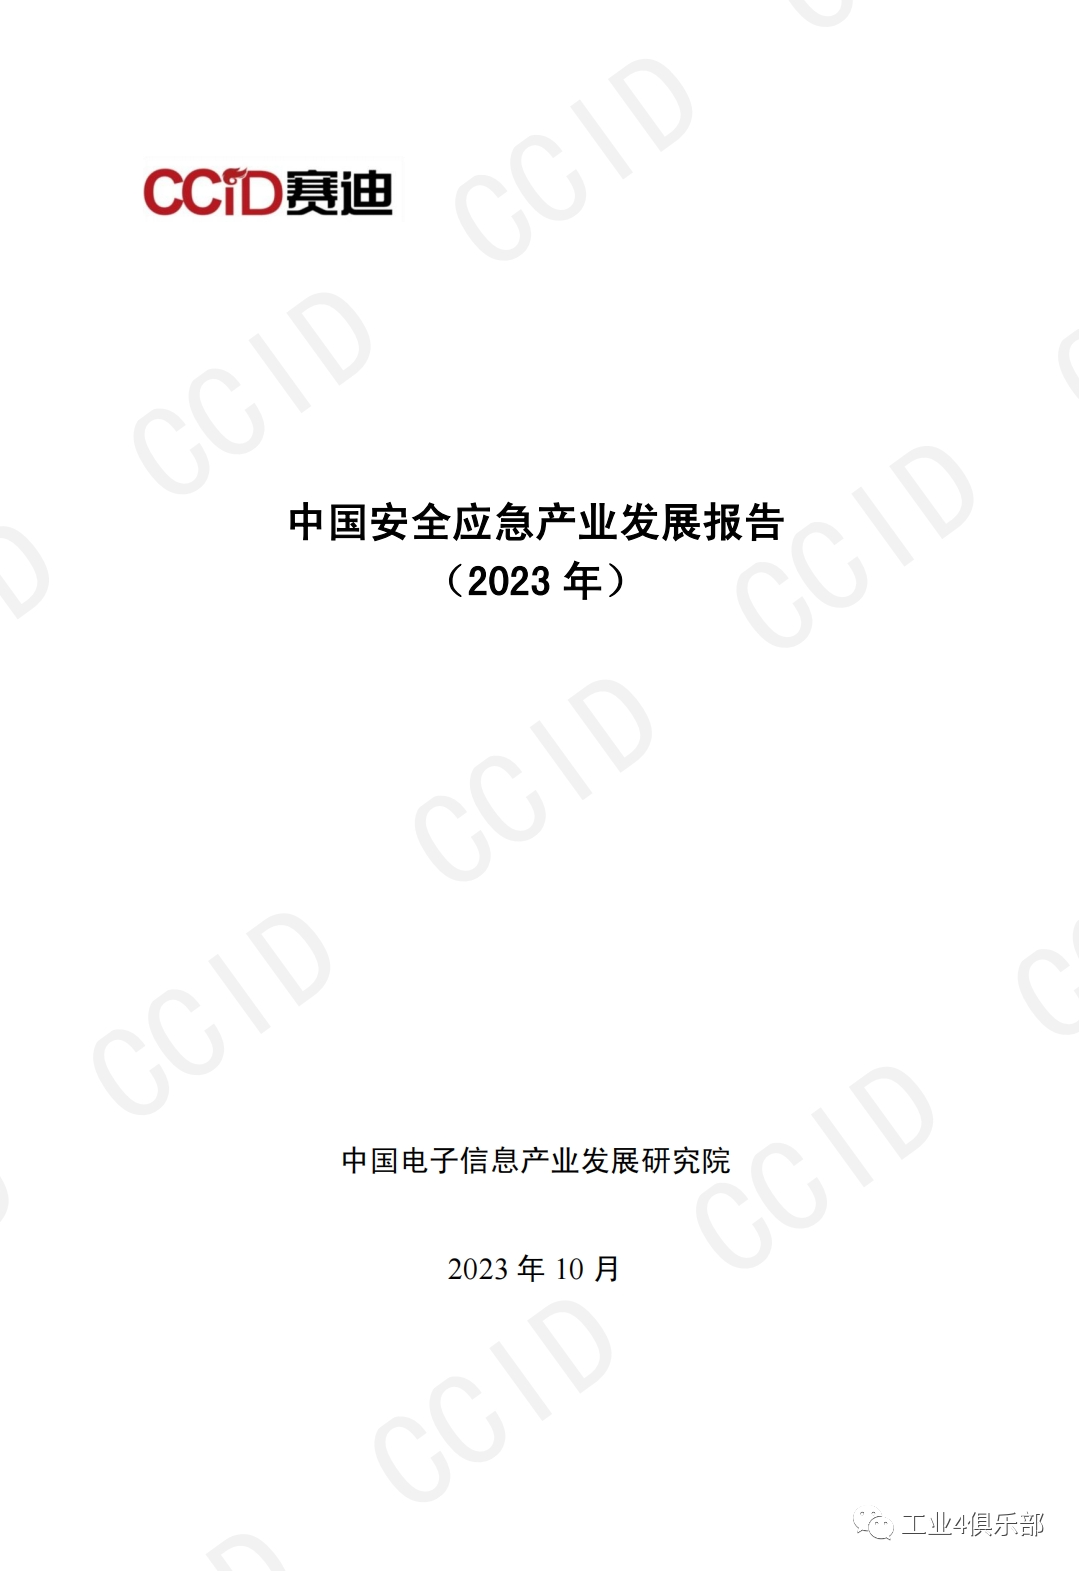 赛迪研究院发布《中国安全应急产业发展报告（2023年度）》 